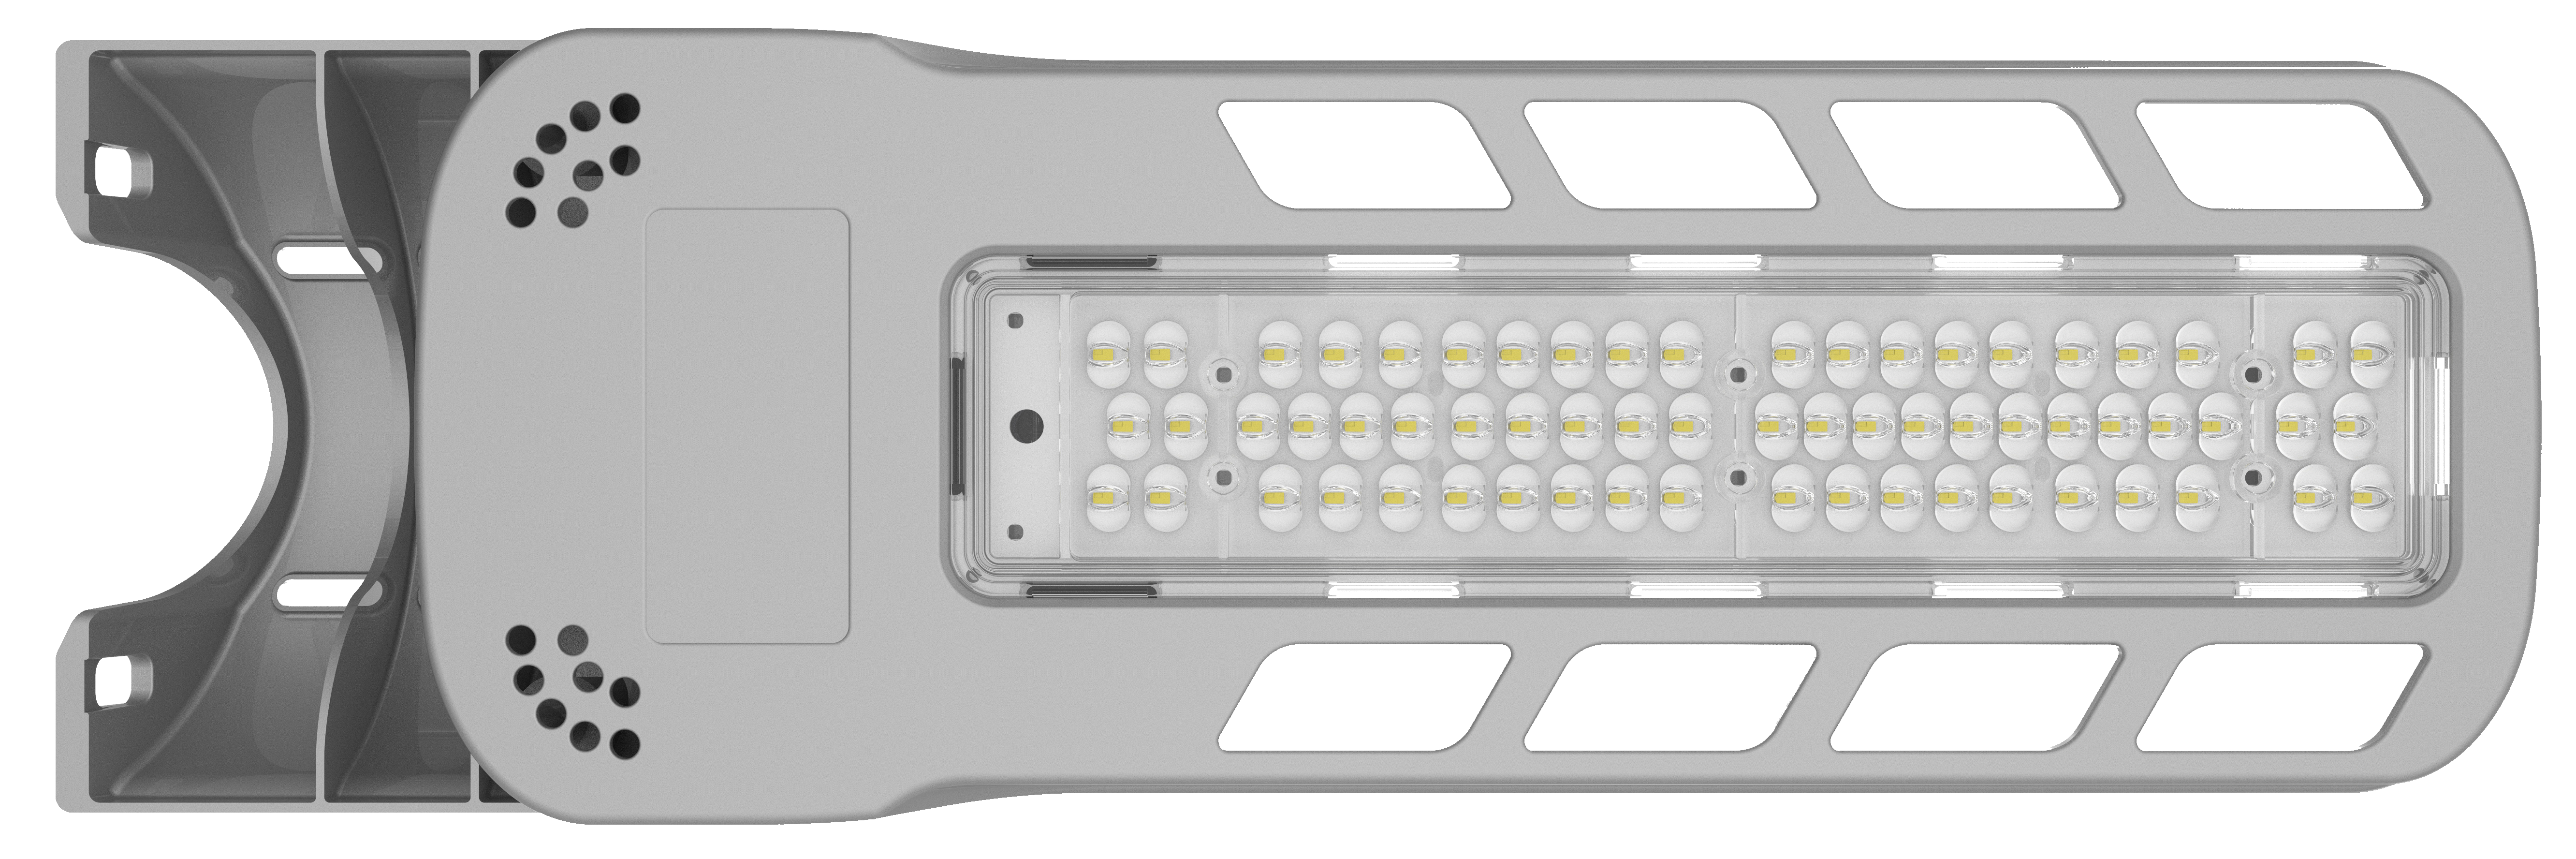 مصباح الشارع LED من النوع البسيط من سلسلة RK 